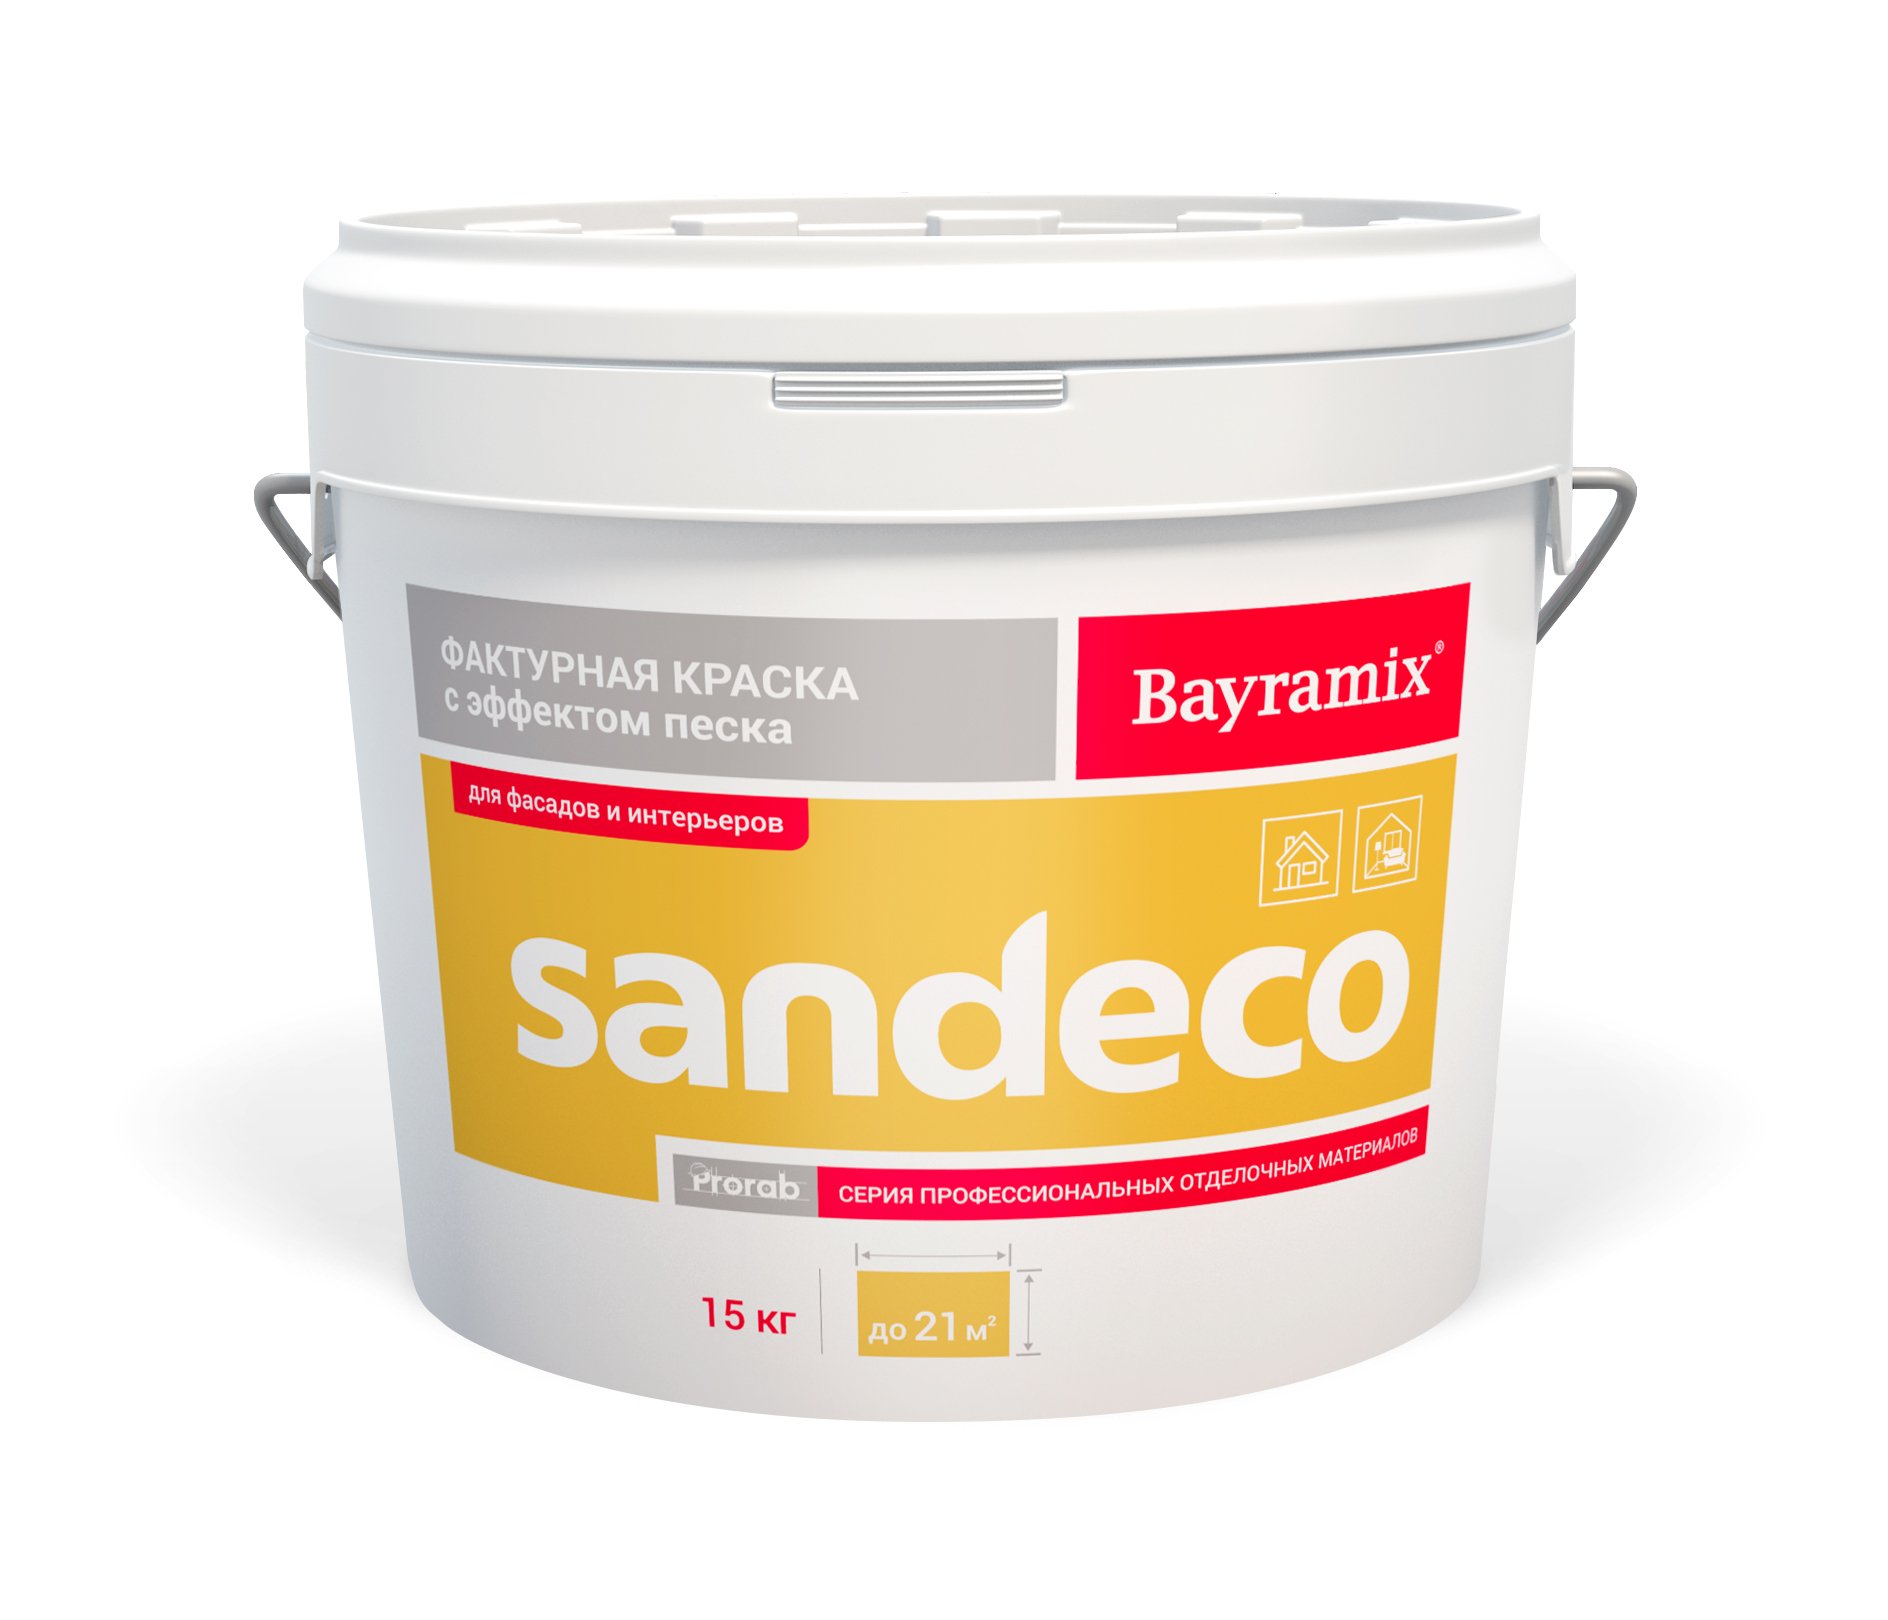 Фактурная краска Bayramix Sandeco для наружных и внутренних работ, 15 кг акриловая краска для osb плит для наружных и внутренних работ master farbe